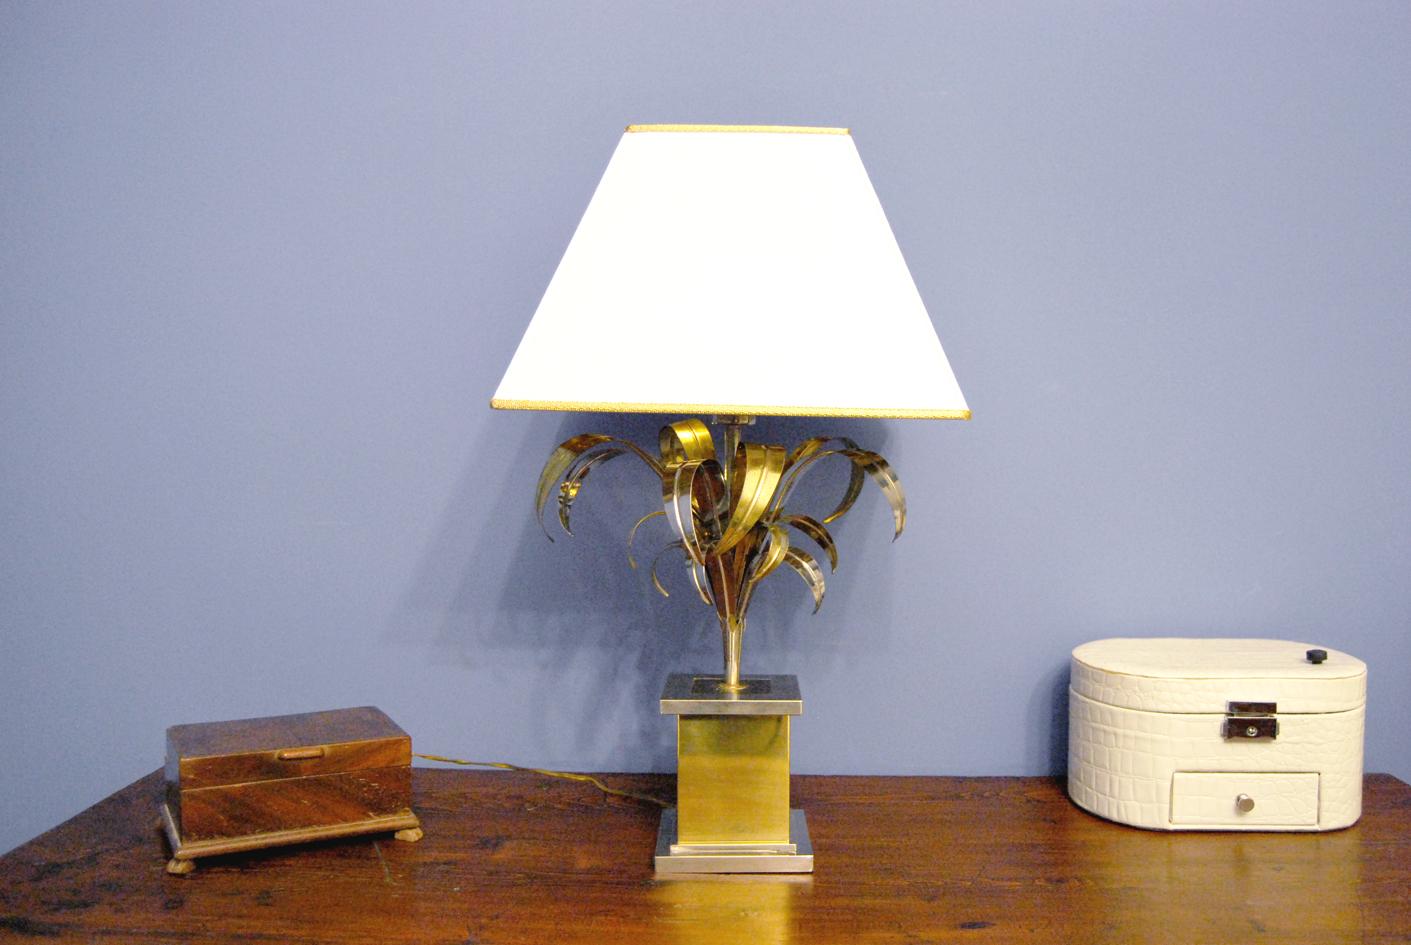 Fabuleuse lampe de table antique moderne, attribuée à Willy Rizzo.
La lampe, datant de 1960, se compose d'une base parallélépipédique d'où part une tige avec des feuilles de différentes tailles. 
Il est fabriqué en laiton avec des parties argentées